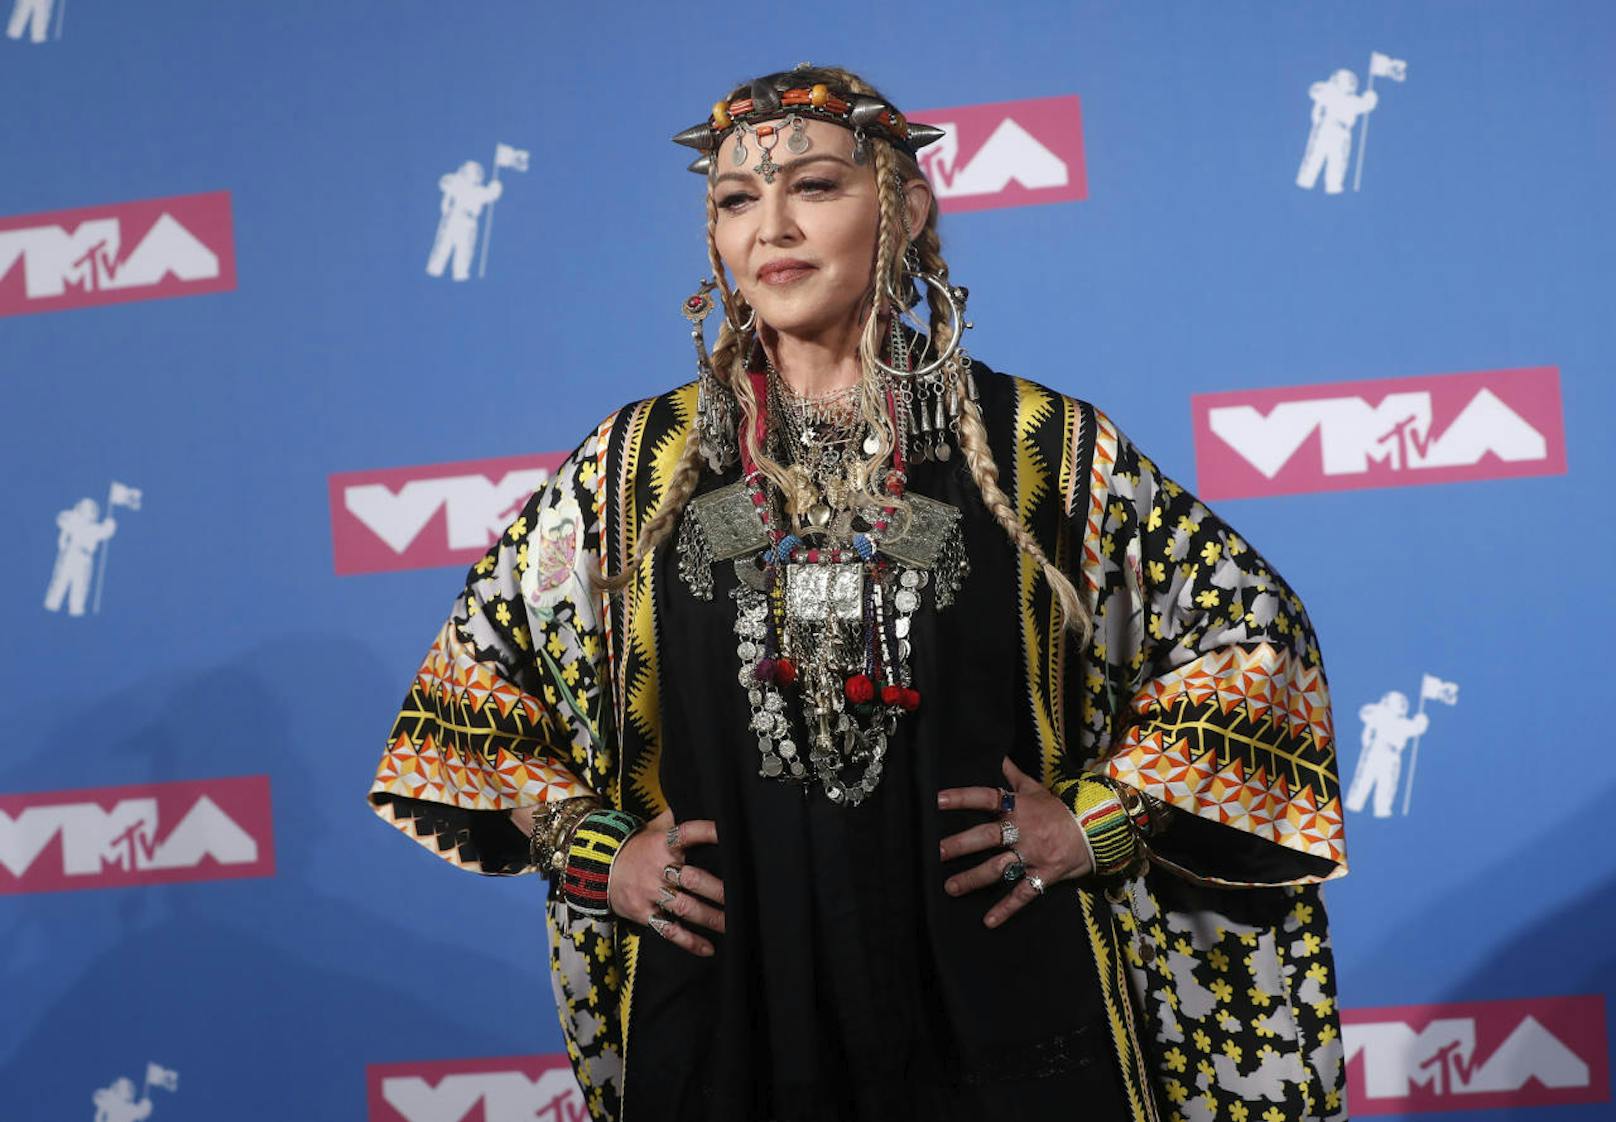 22.08.2018: Weiß Madonna, dass nicht sie gestorben ist? Die Queen of Pop wollte bei den VMAs die verstorbene Aretha Franklin ehren, lobte aber sich selbst - Shitstorm!